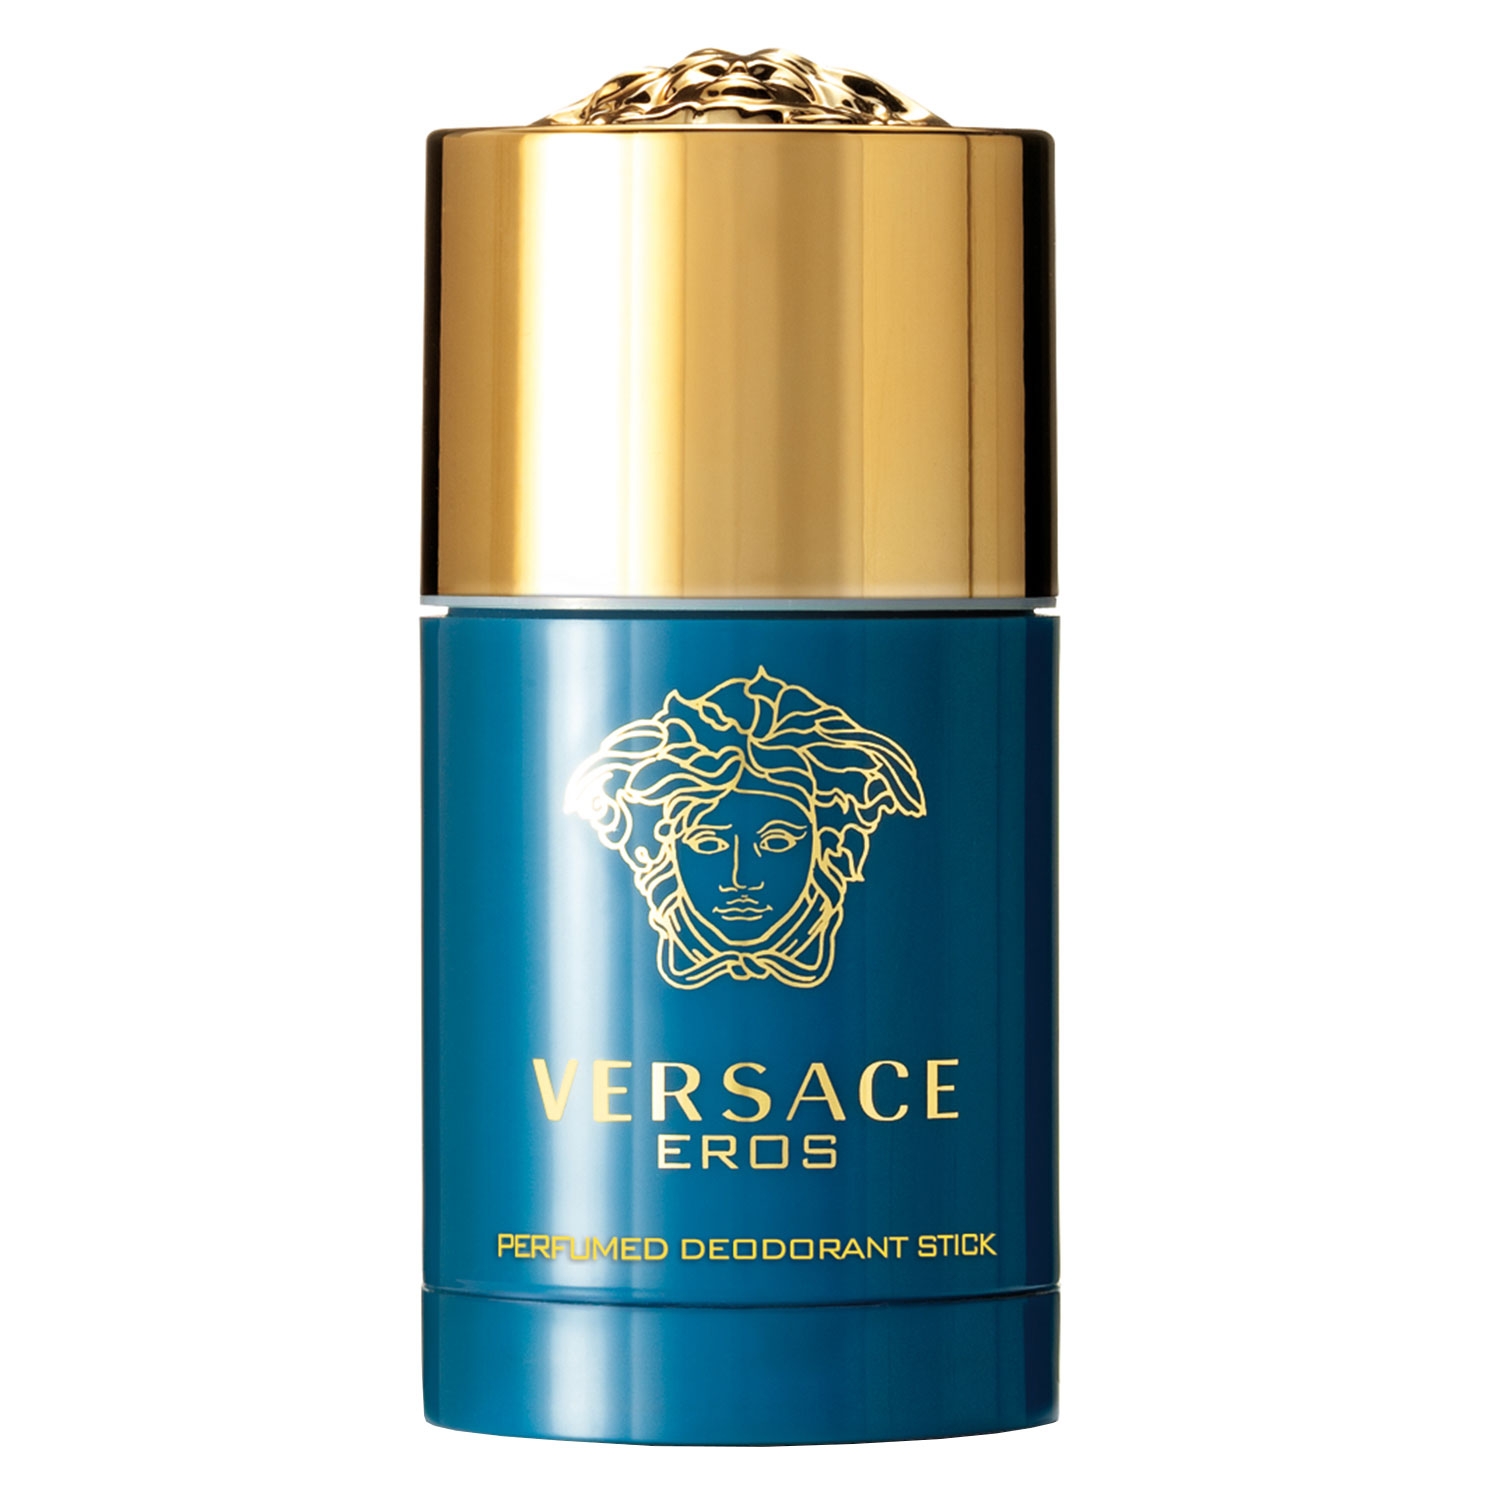 Produktbild von Versace Eros - Deodorant Stick